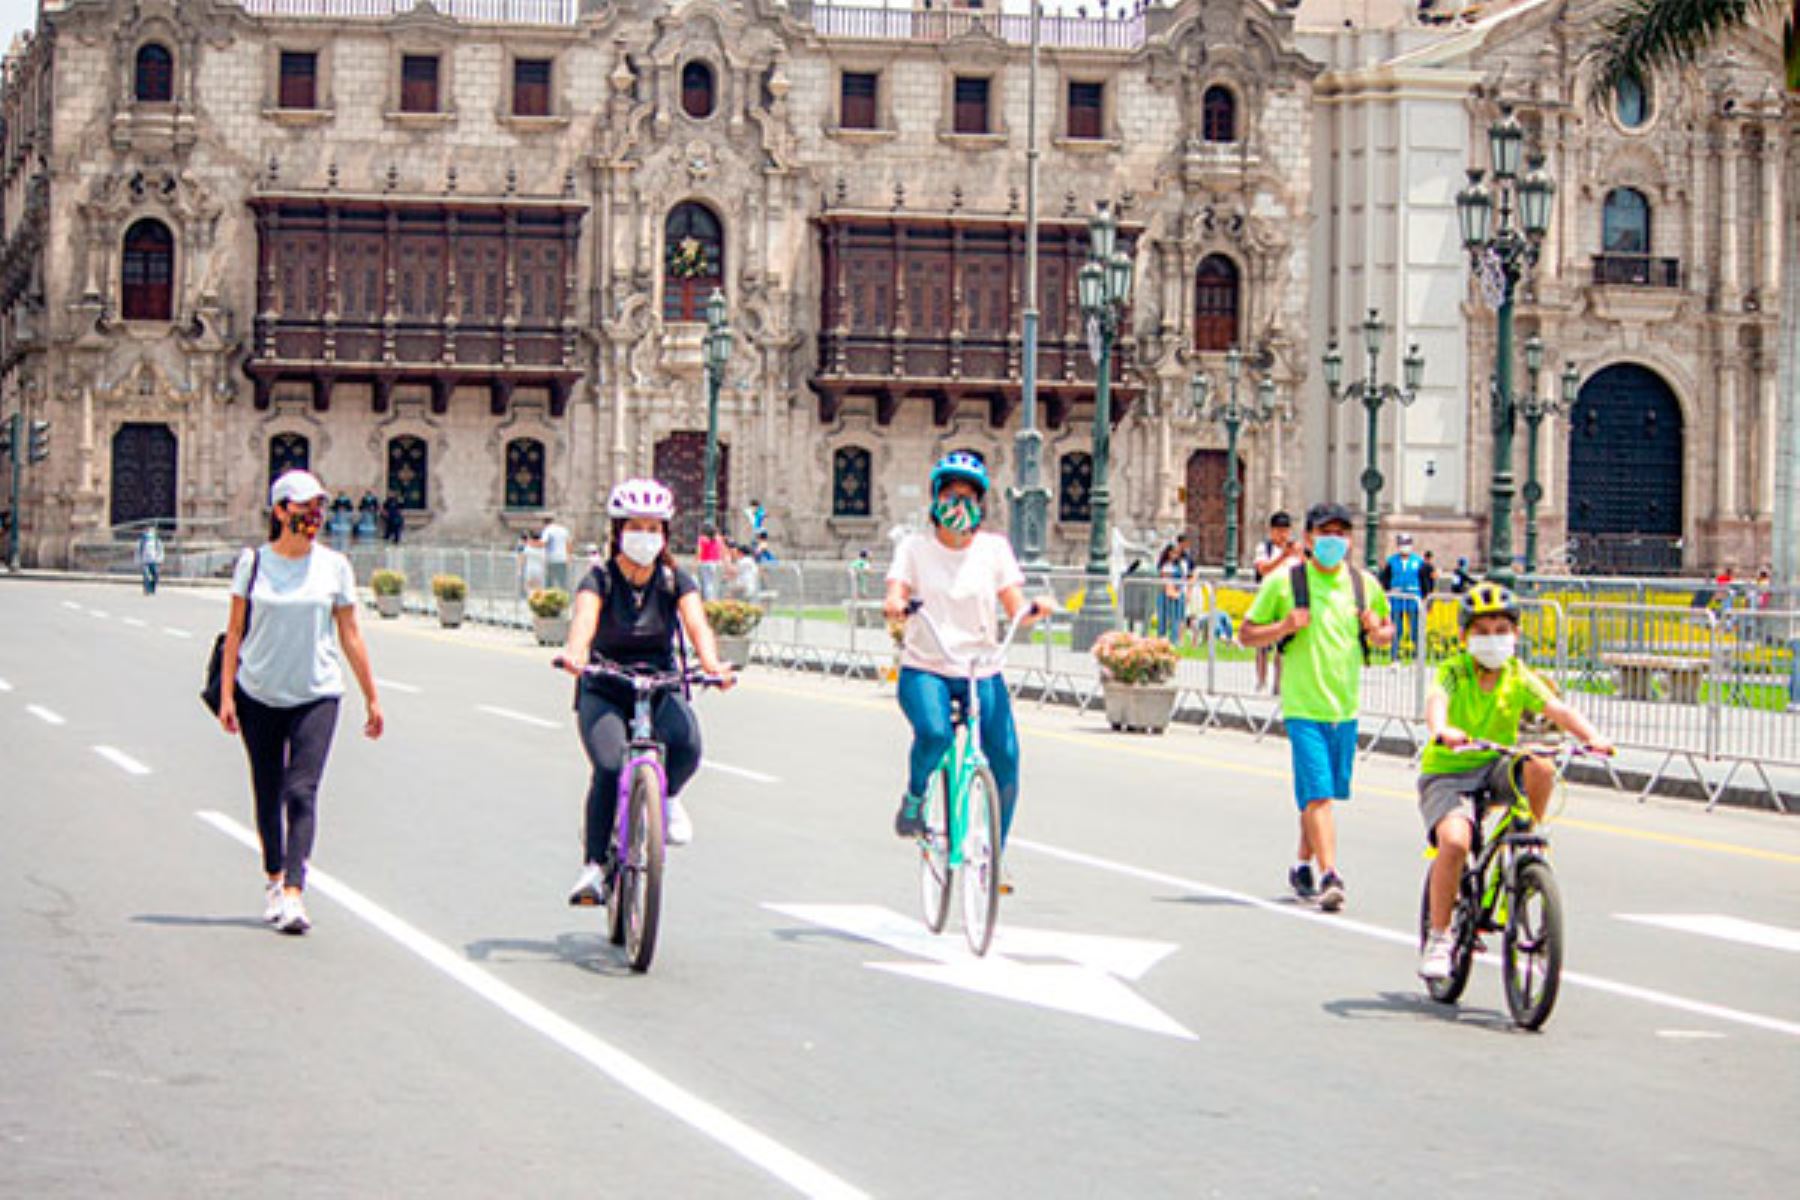 Este domingo 25 se llevarán a cabo la bicicleteada Pedaleando por el Bicentenario del Perú y el programa Al Damero de Pizarro sin carro. Además, se habilitará la ciclovía recreativa de la Av. Arequipa.